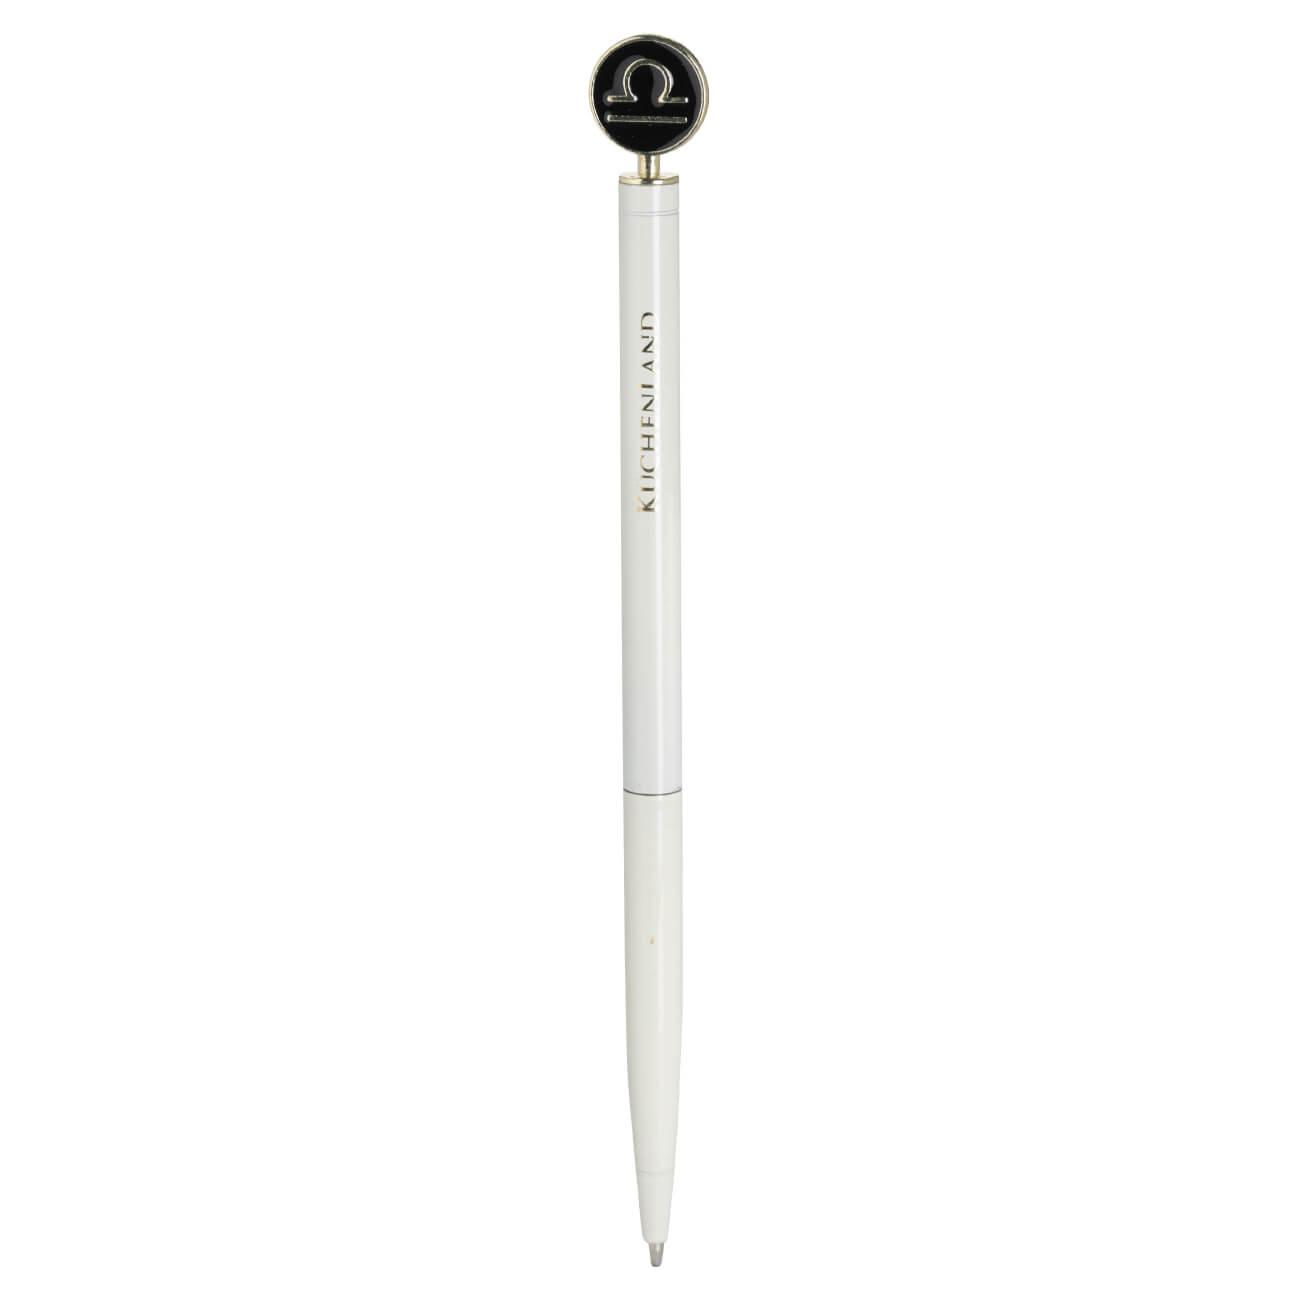 Ручка шариковая, 15 см, с фигуркой, сталь, молочно-золотистая, Весы, Zodiac dueto gun ручка стилус